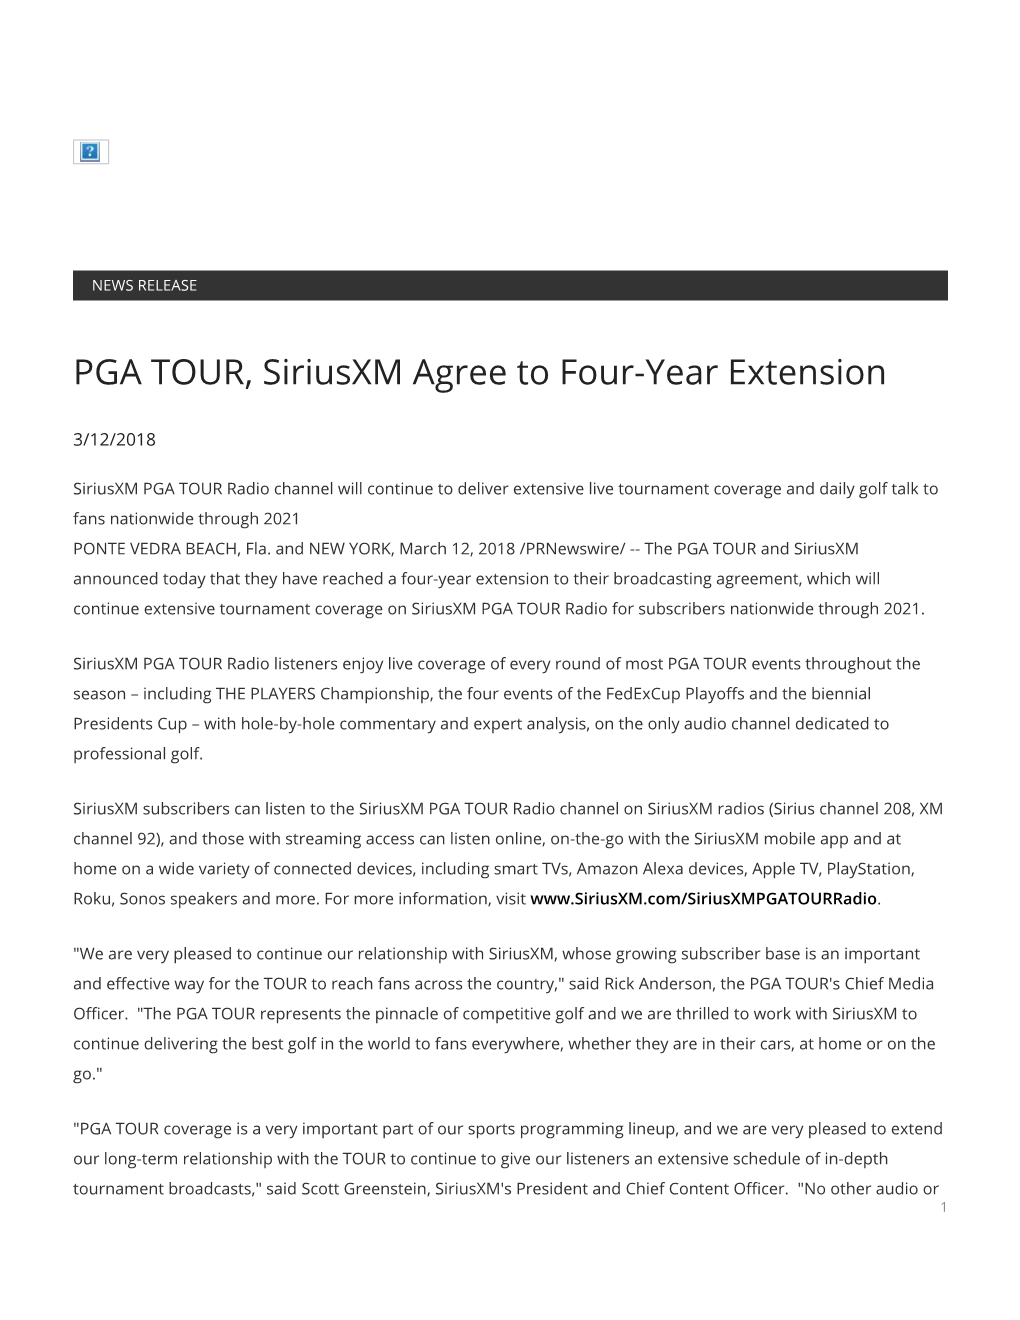 PGA TOUR, Siriusxm Agree to Four-Year Extension